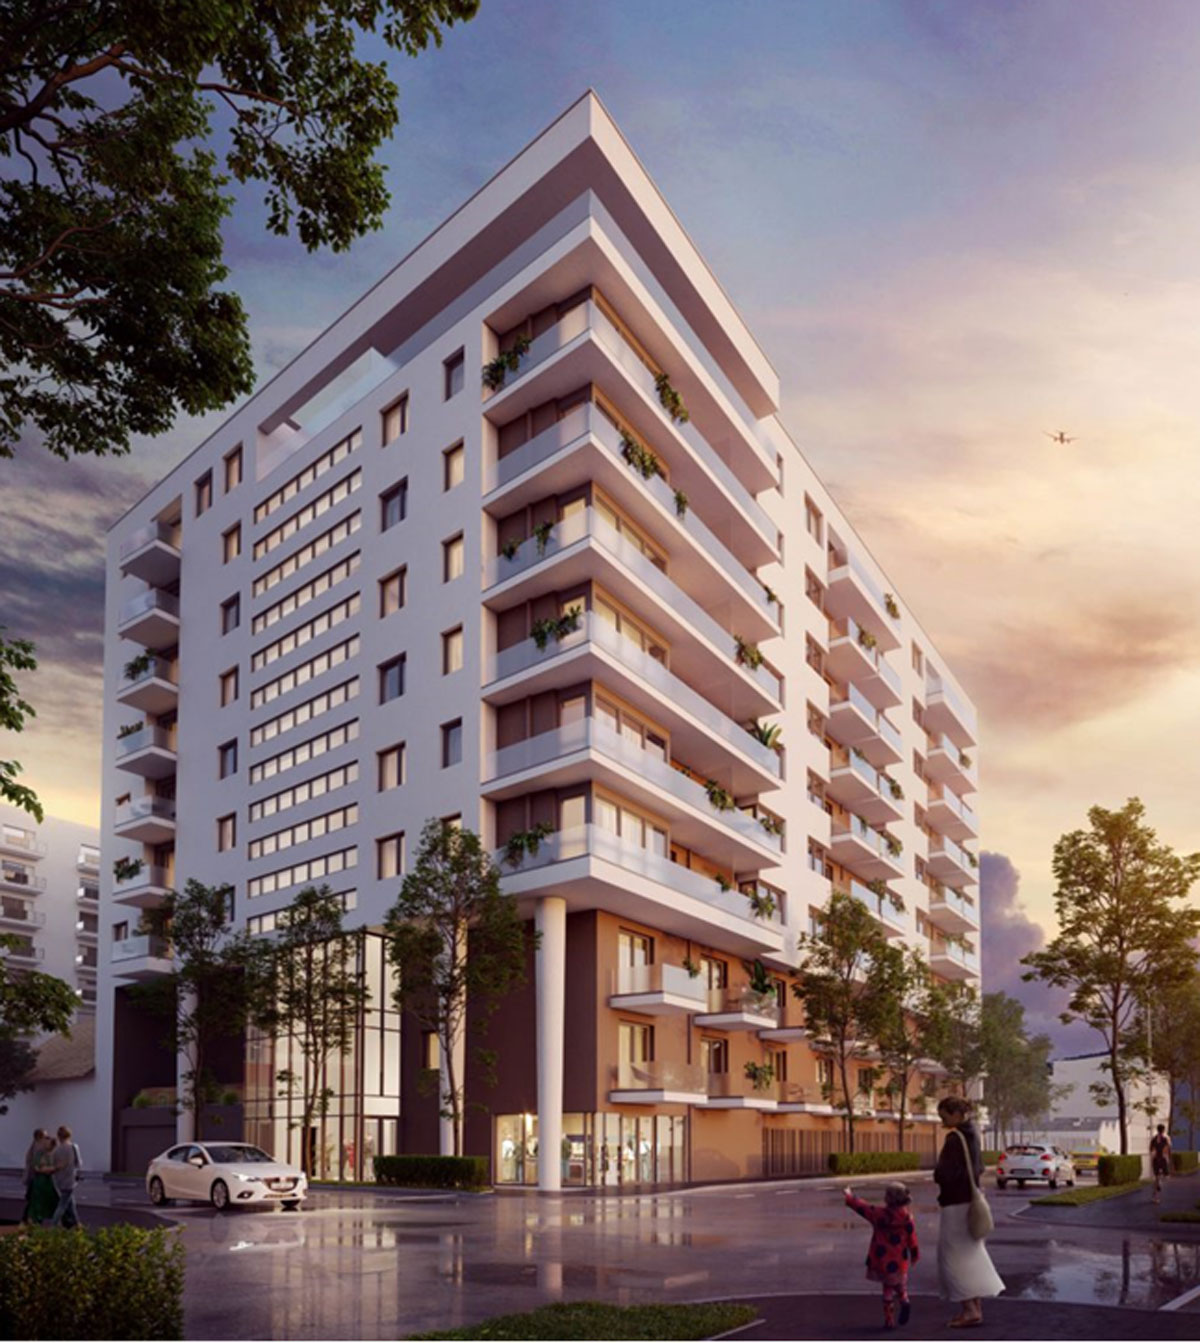 הדמיה של הפרויקט millennium residence- רכישת דירות בשלבים מוקדמים של בניה בבודפשט